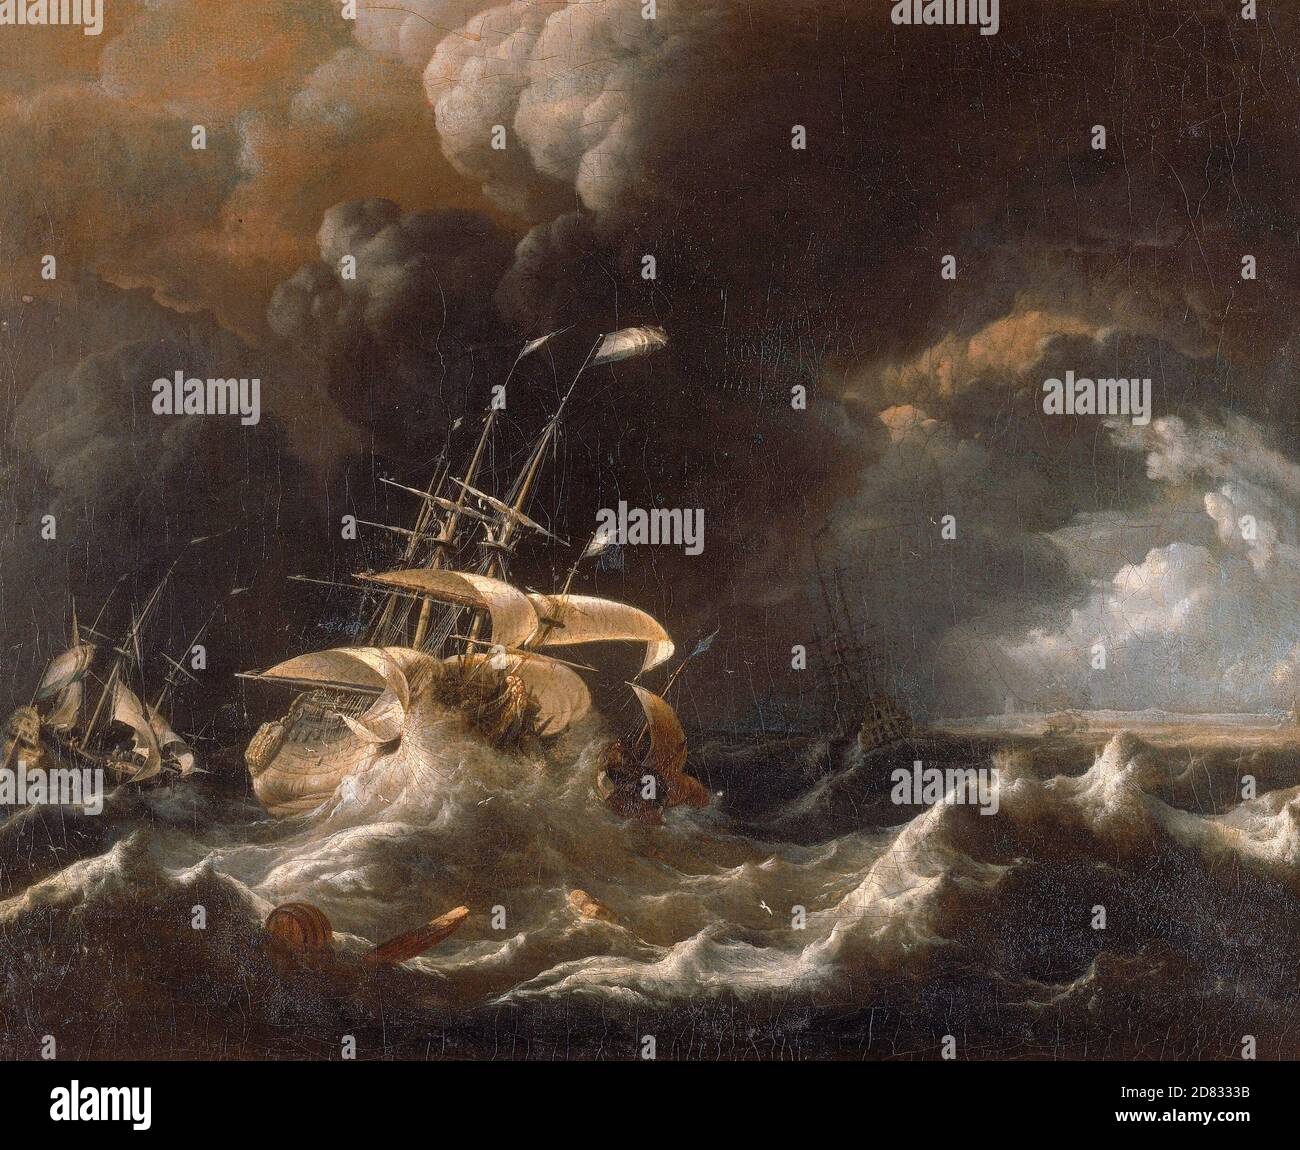 Navires marchands hollandais dans une tempête - Ludolf Bakhuizen, 1670 Banque D'Images